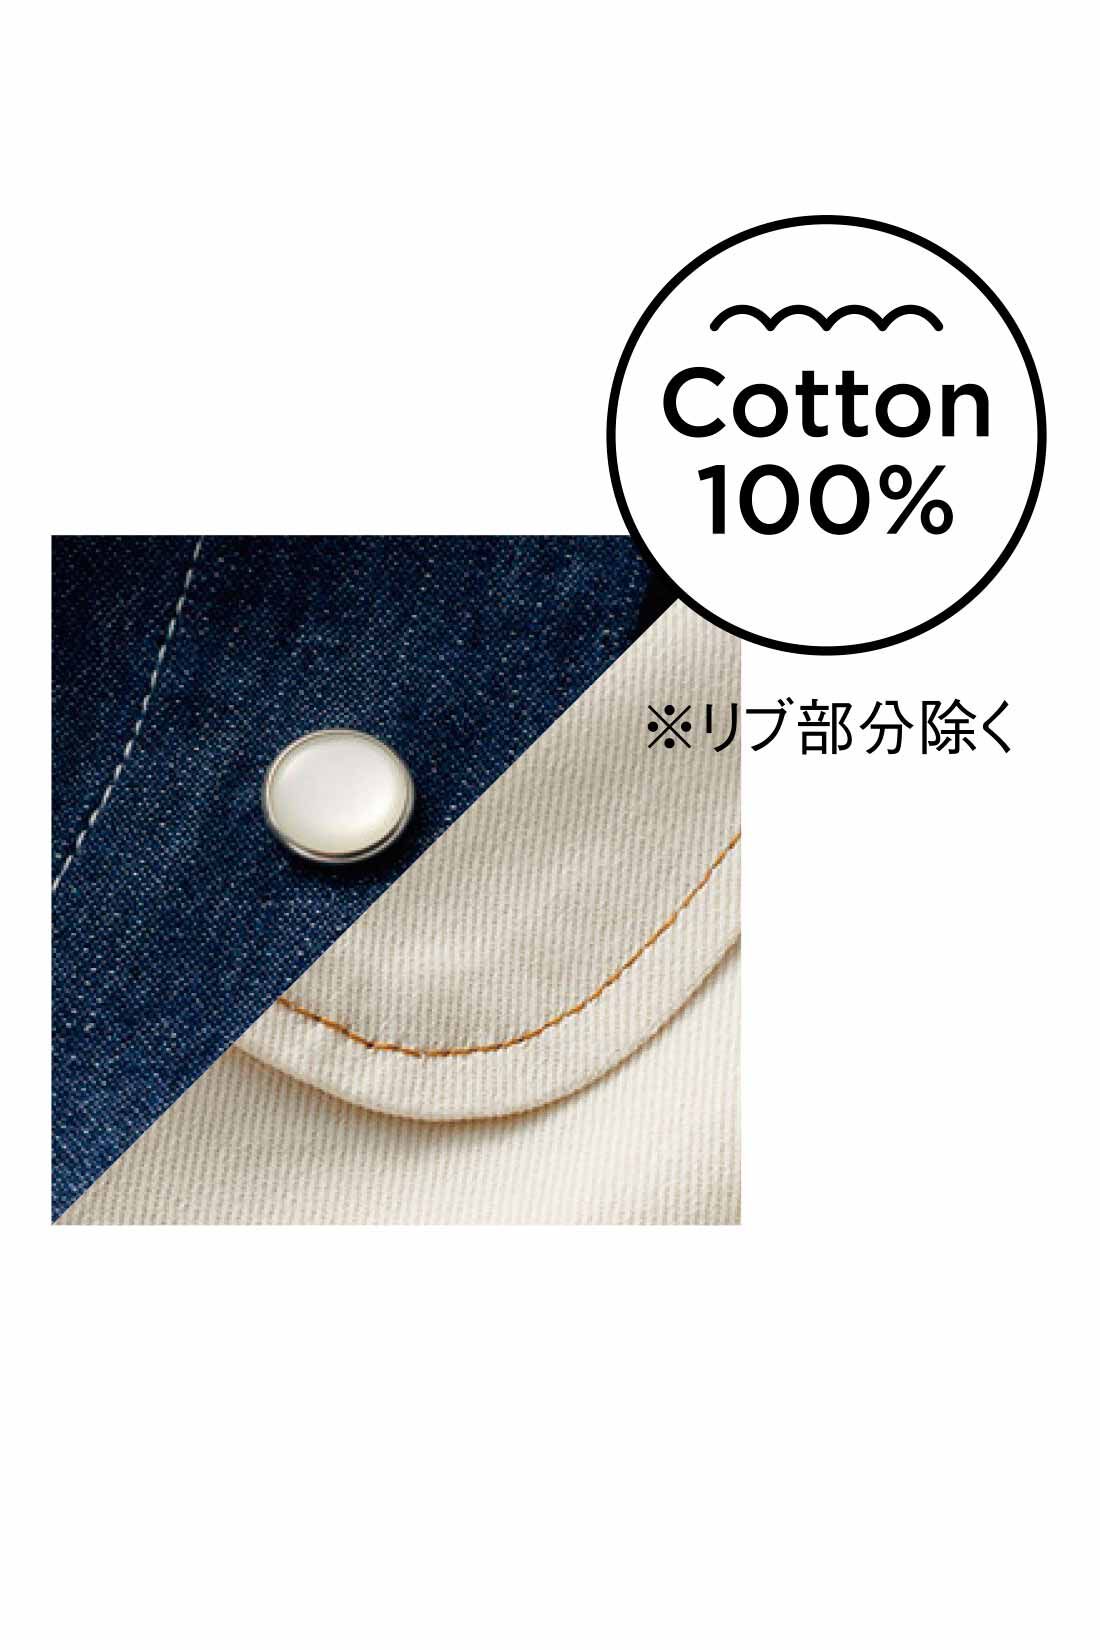 Live in  comfort|リブ イン コンフォート ばさっとはおれる 軽やかコットンシャツジャケット 〈デニム〉|綿100％素材に映える、配色ステッチやドットボタンをアクセントに。